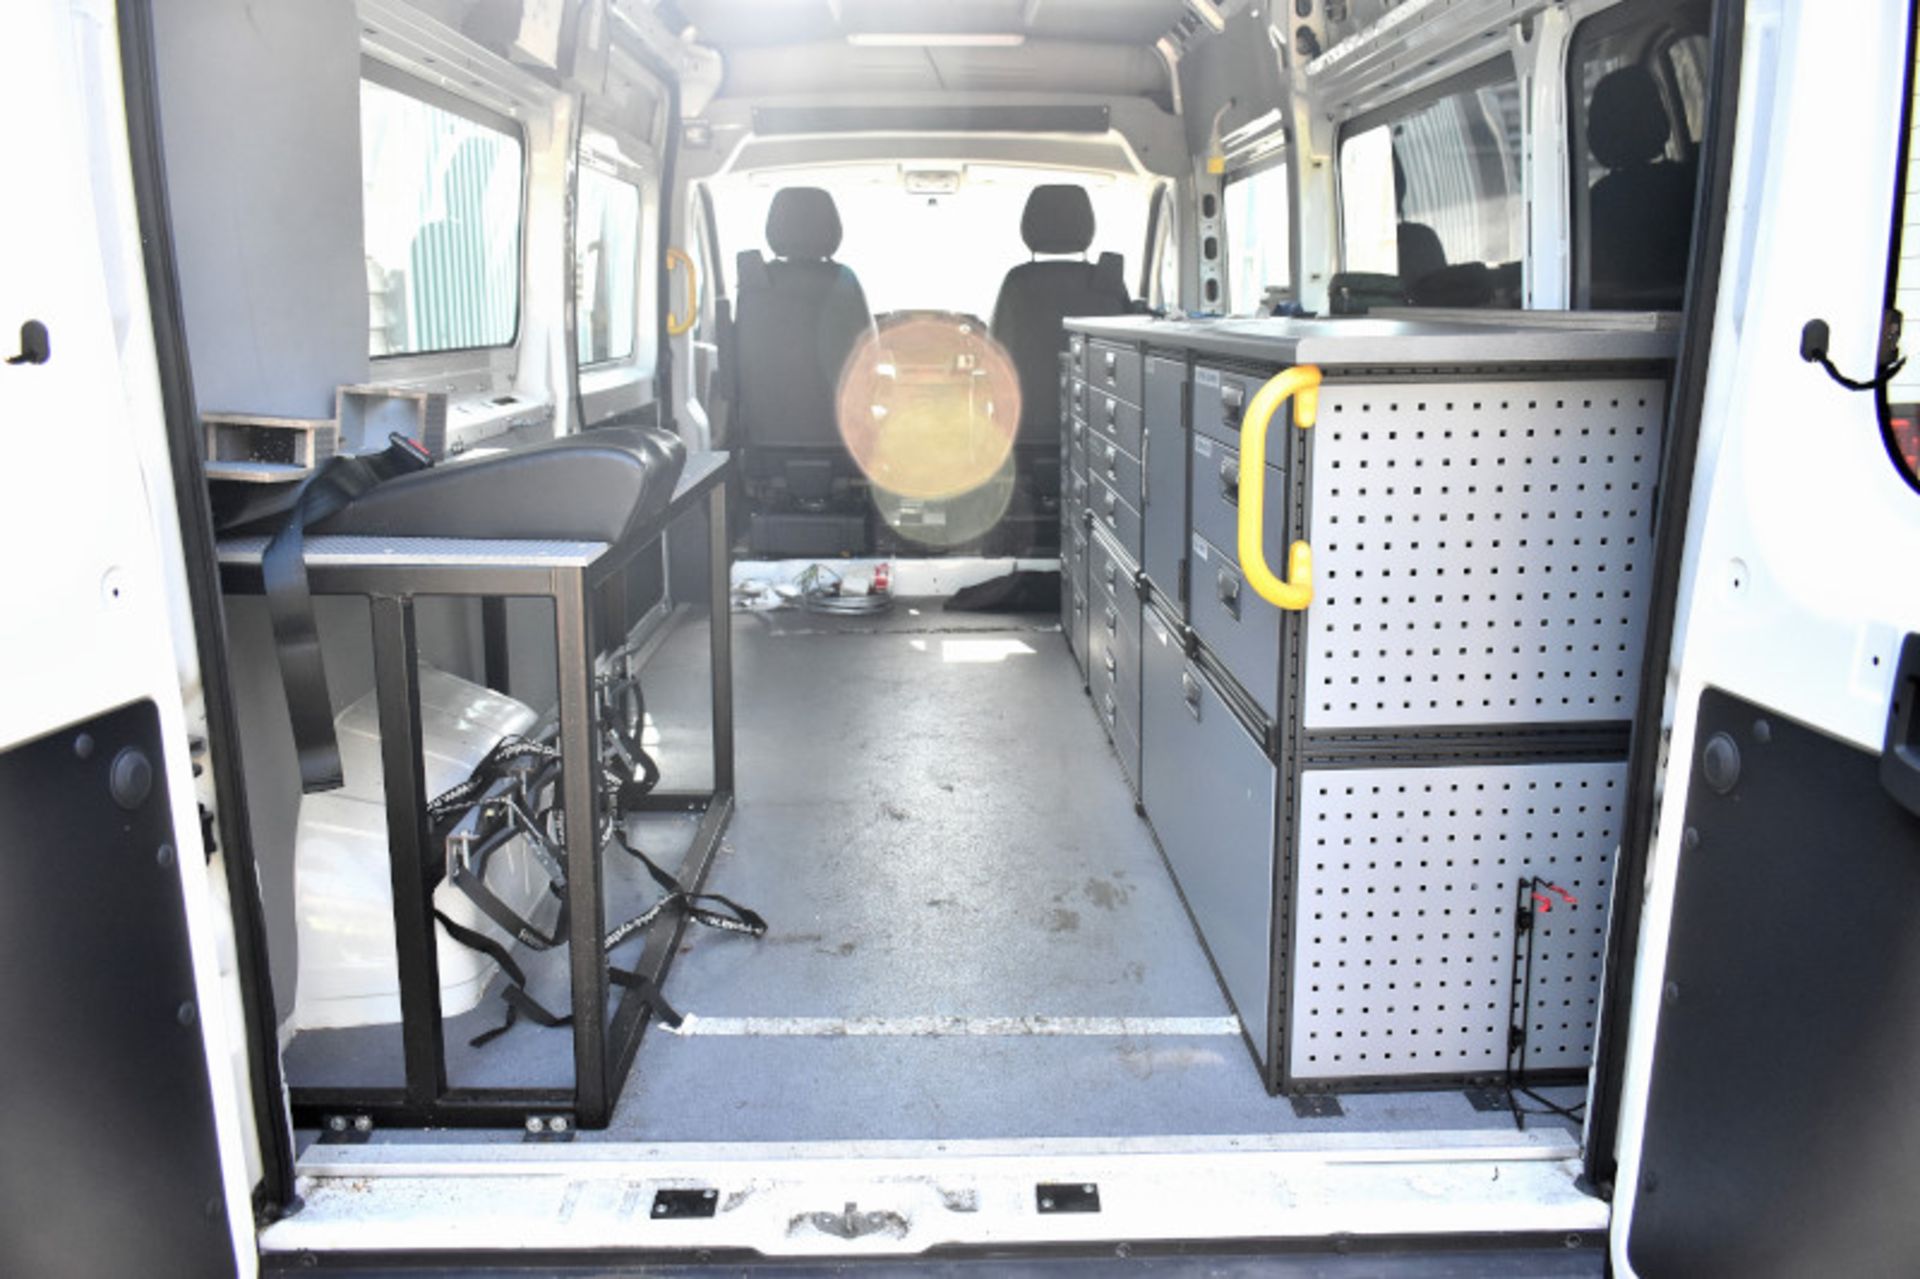 Peugeot LWB white electric van - Panel van - 2 axle rigid body - vehicle category N1 - Image 10 of 28